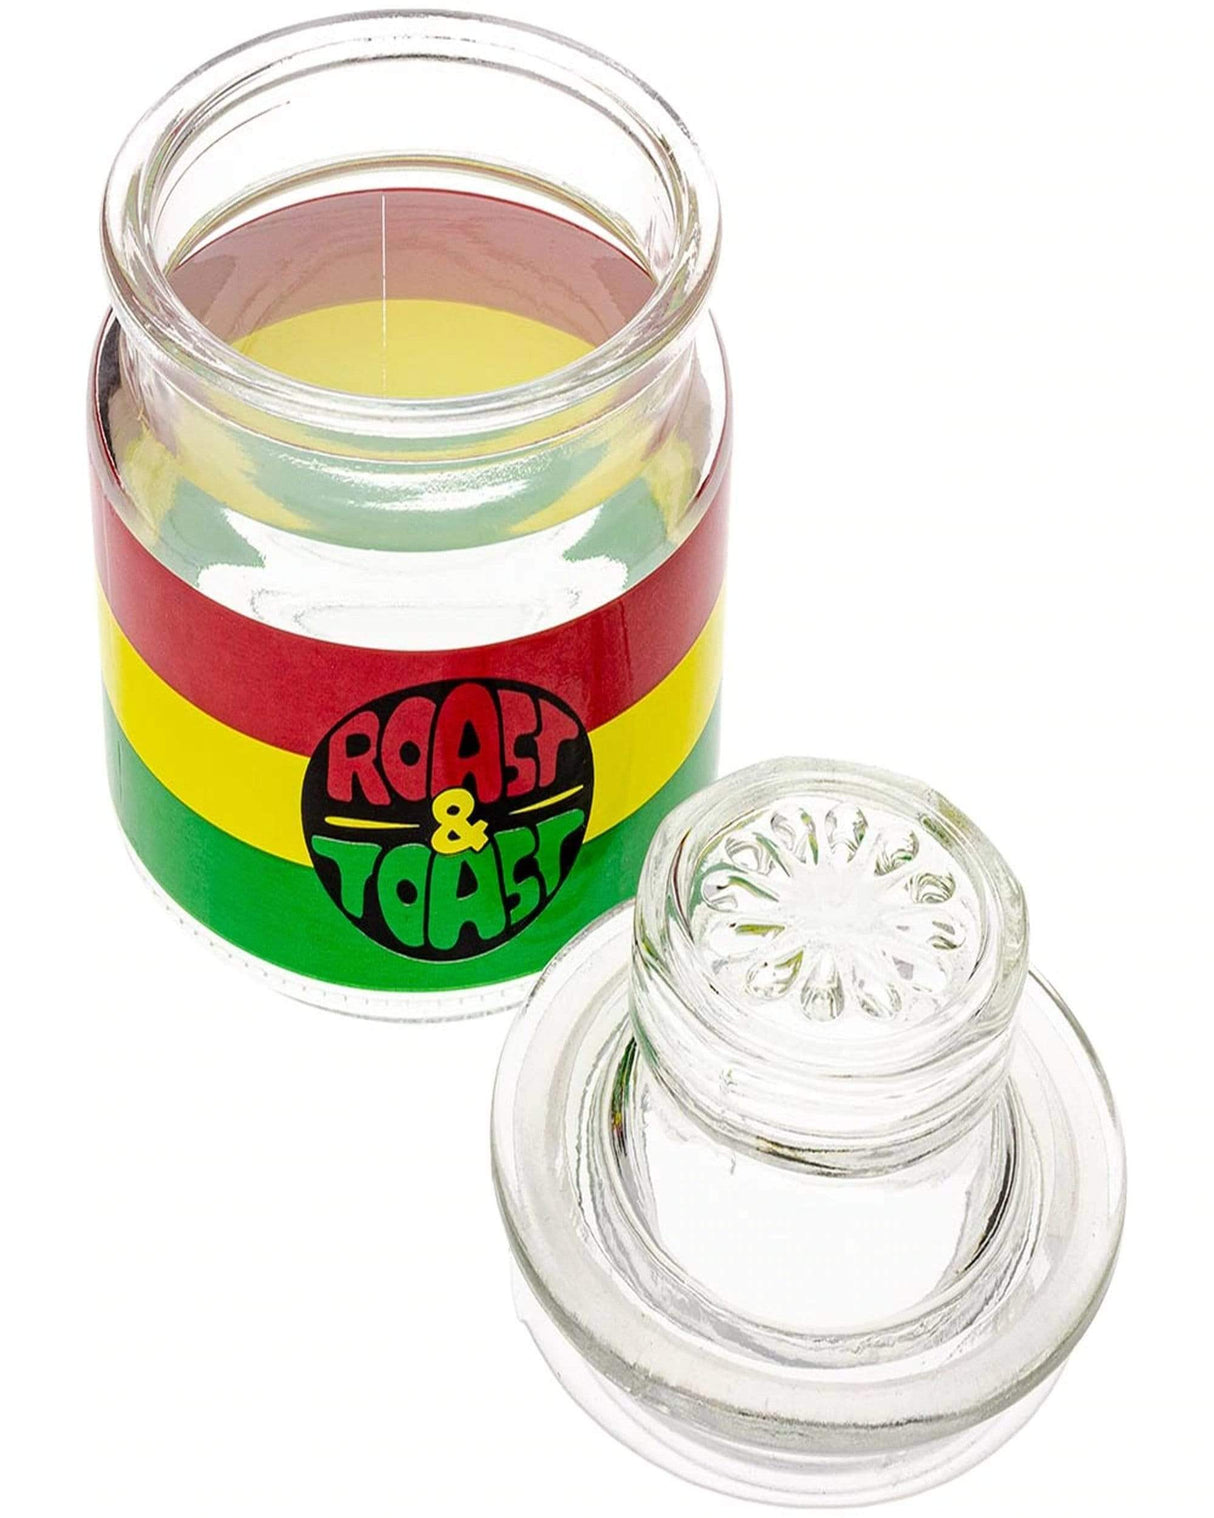 Premium Roast & Toast Glass Stash Jar &Lid